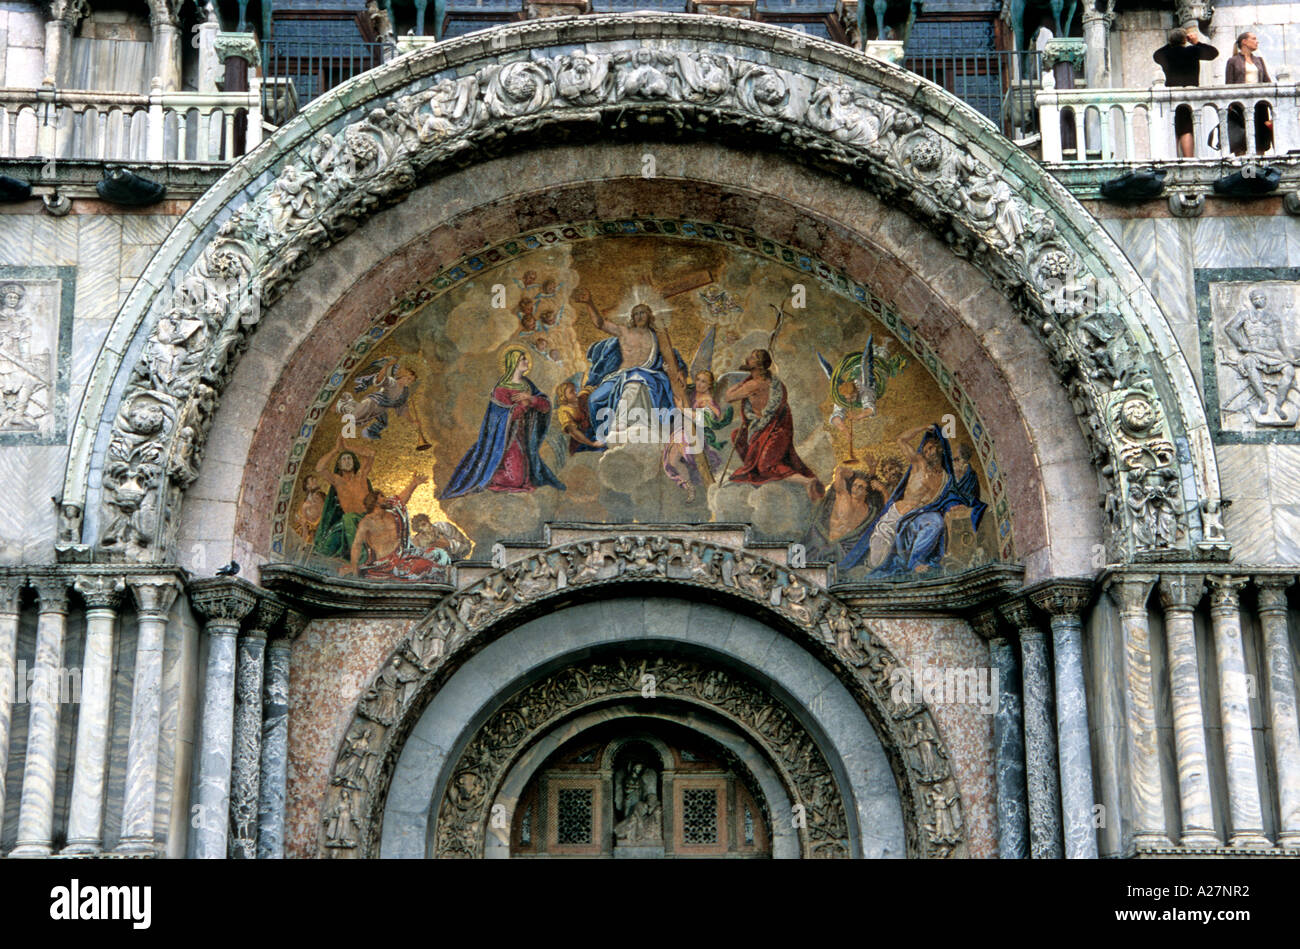 Facade portals, St Mark's Basilica, Venice, Italy Stock Photo